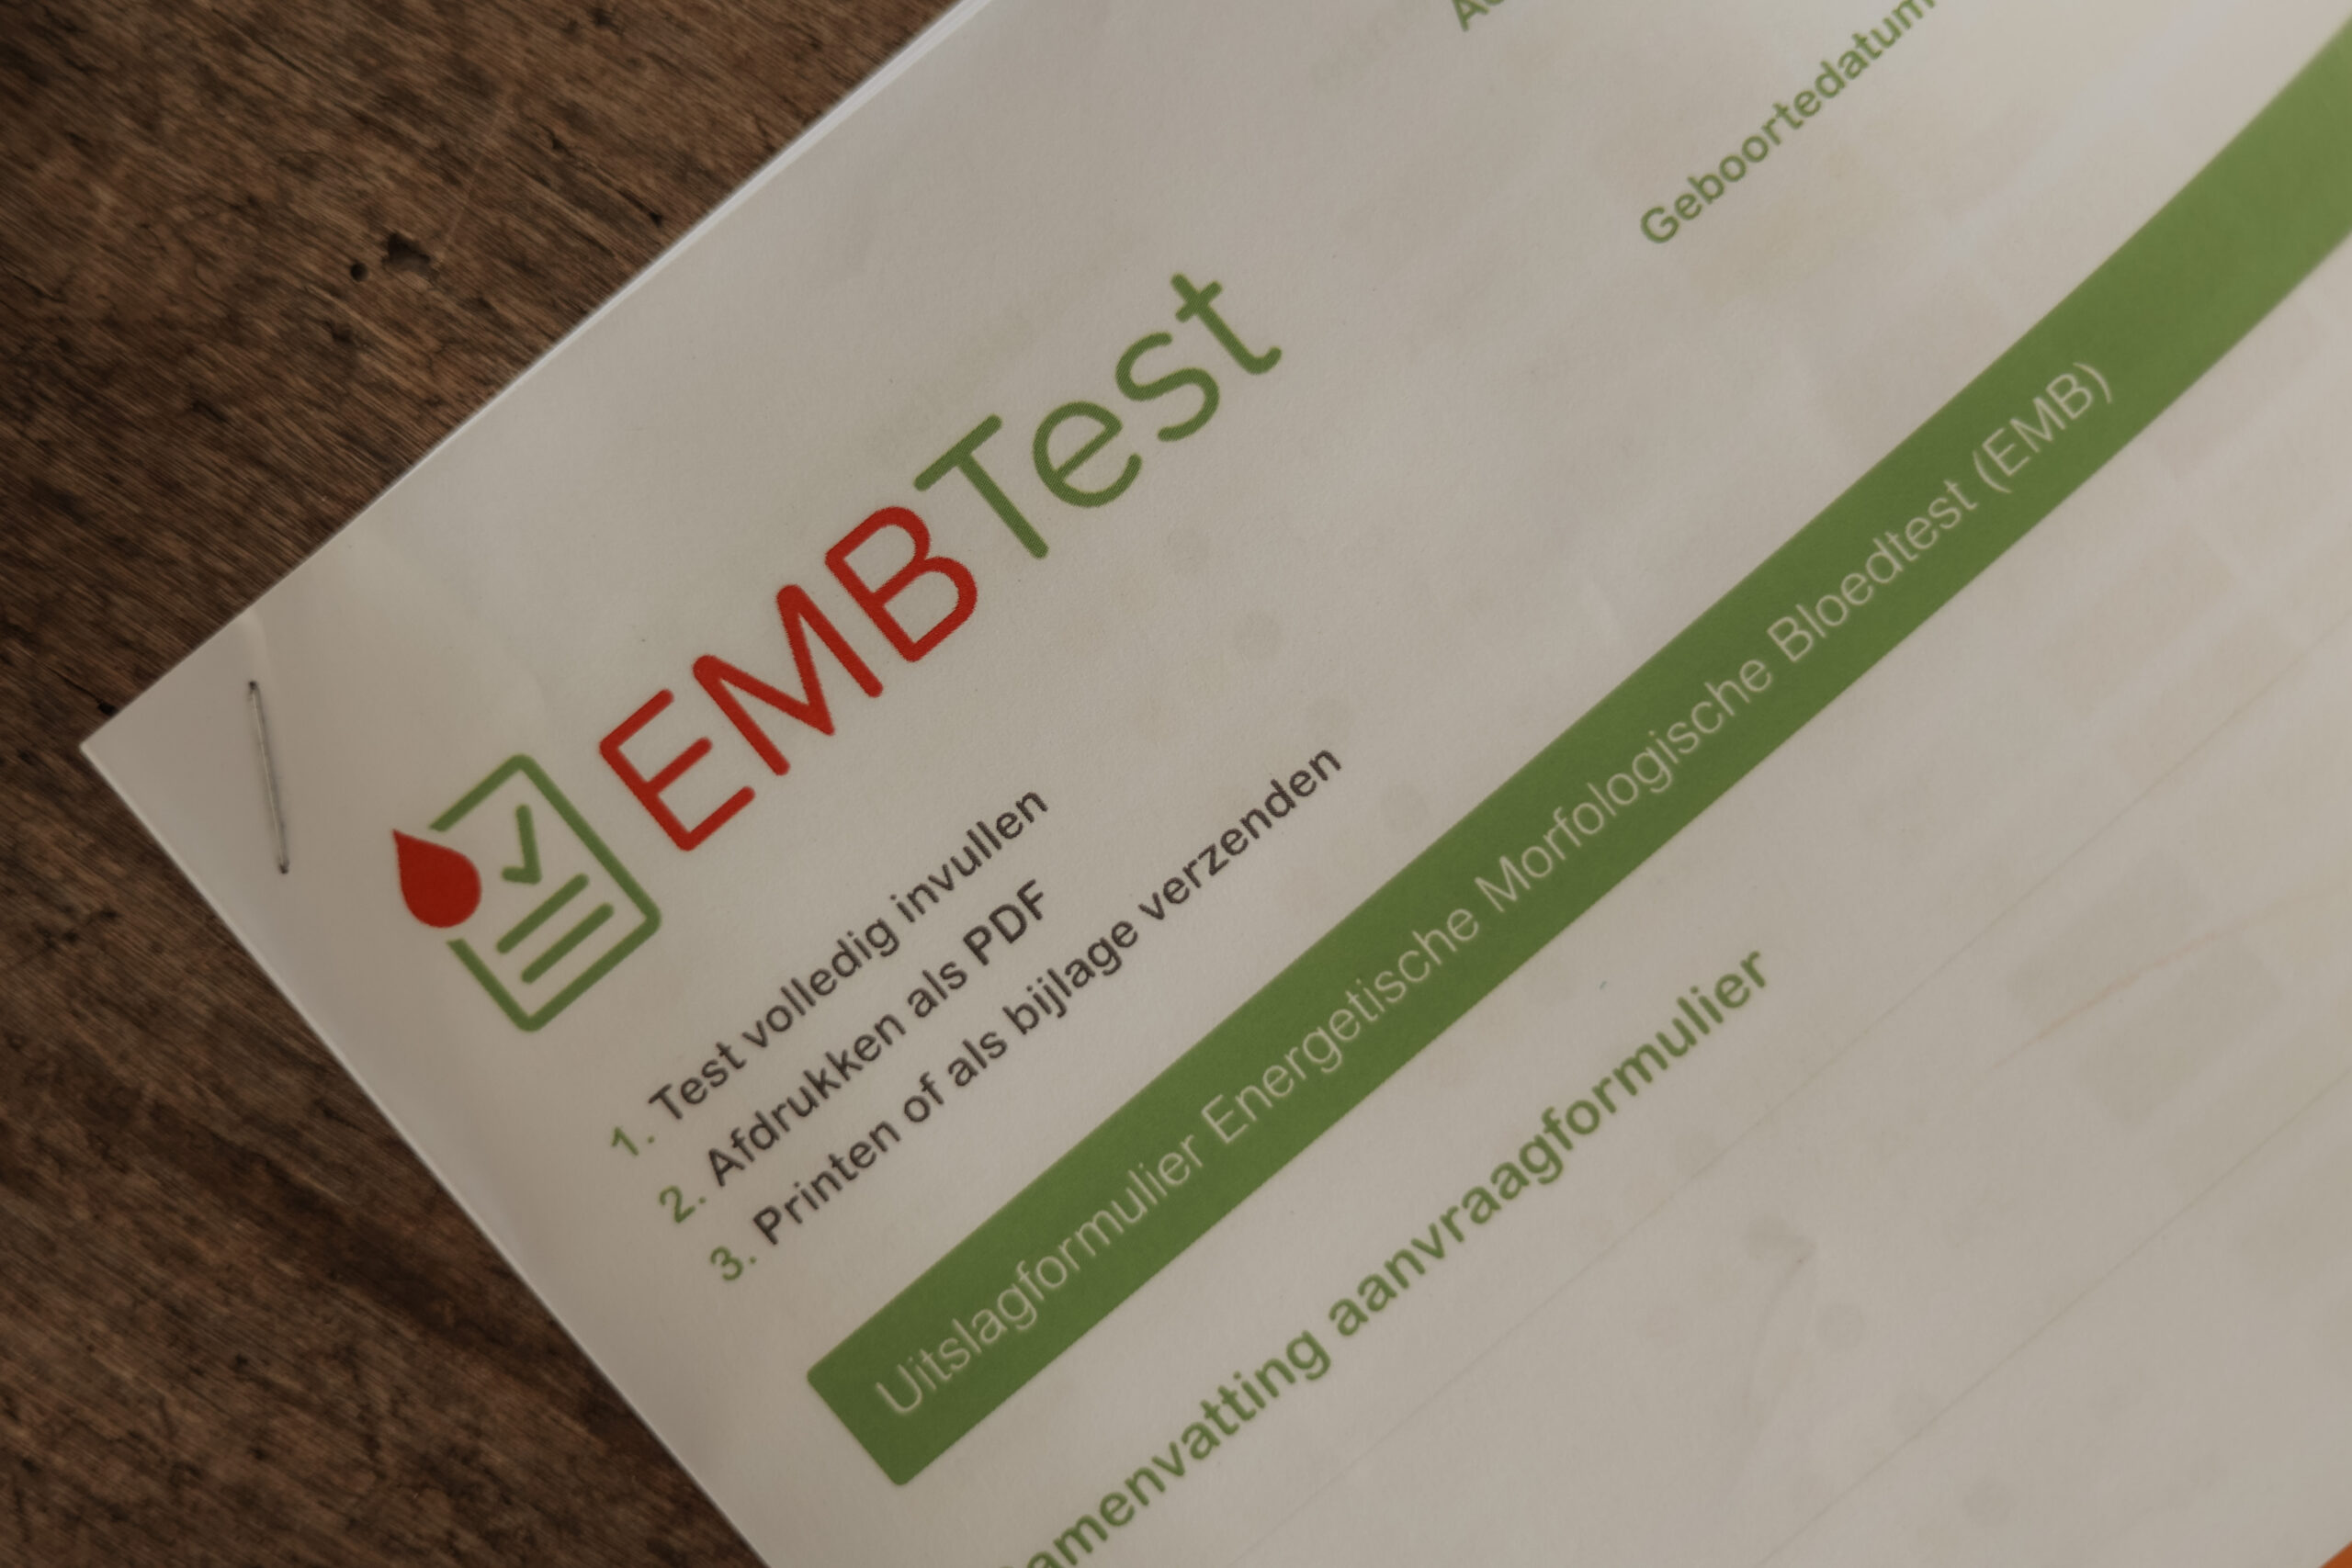 EMB test formulier, hier staat de uitslag in. Door een kleine vingerprik kan op meer dan 50 parameters gemeten worden, zoals vitamine, mineralen, hormonen, stress, burn-out, schildklier, voedingsintoleranties.